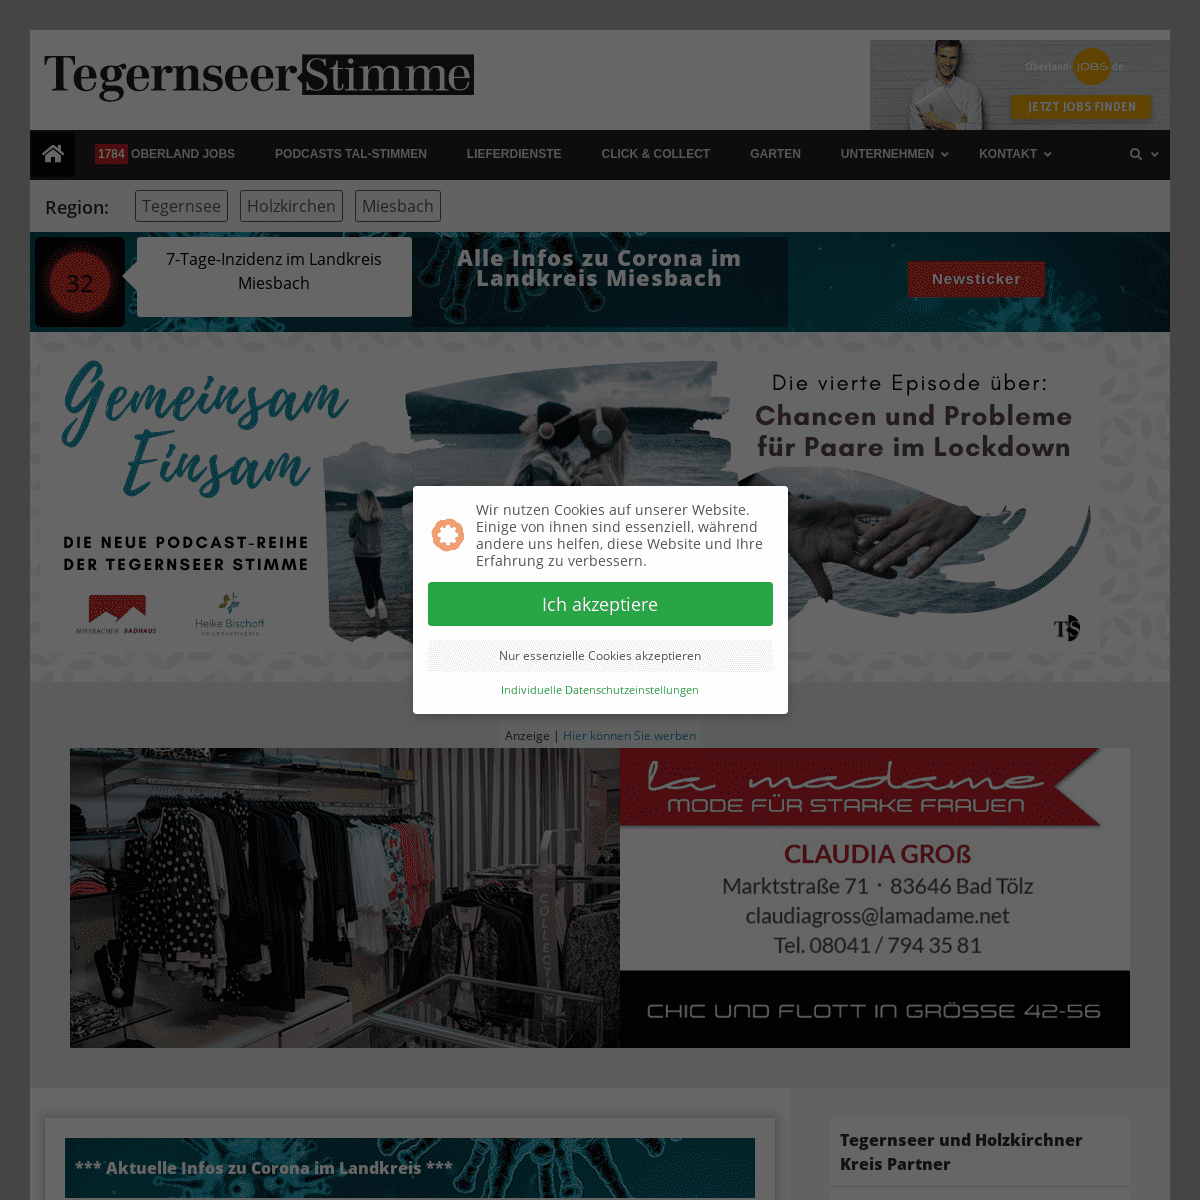 A complete backup of https://tegernseerstimme.de